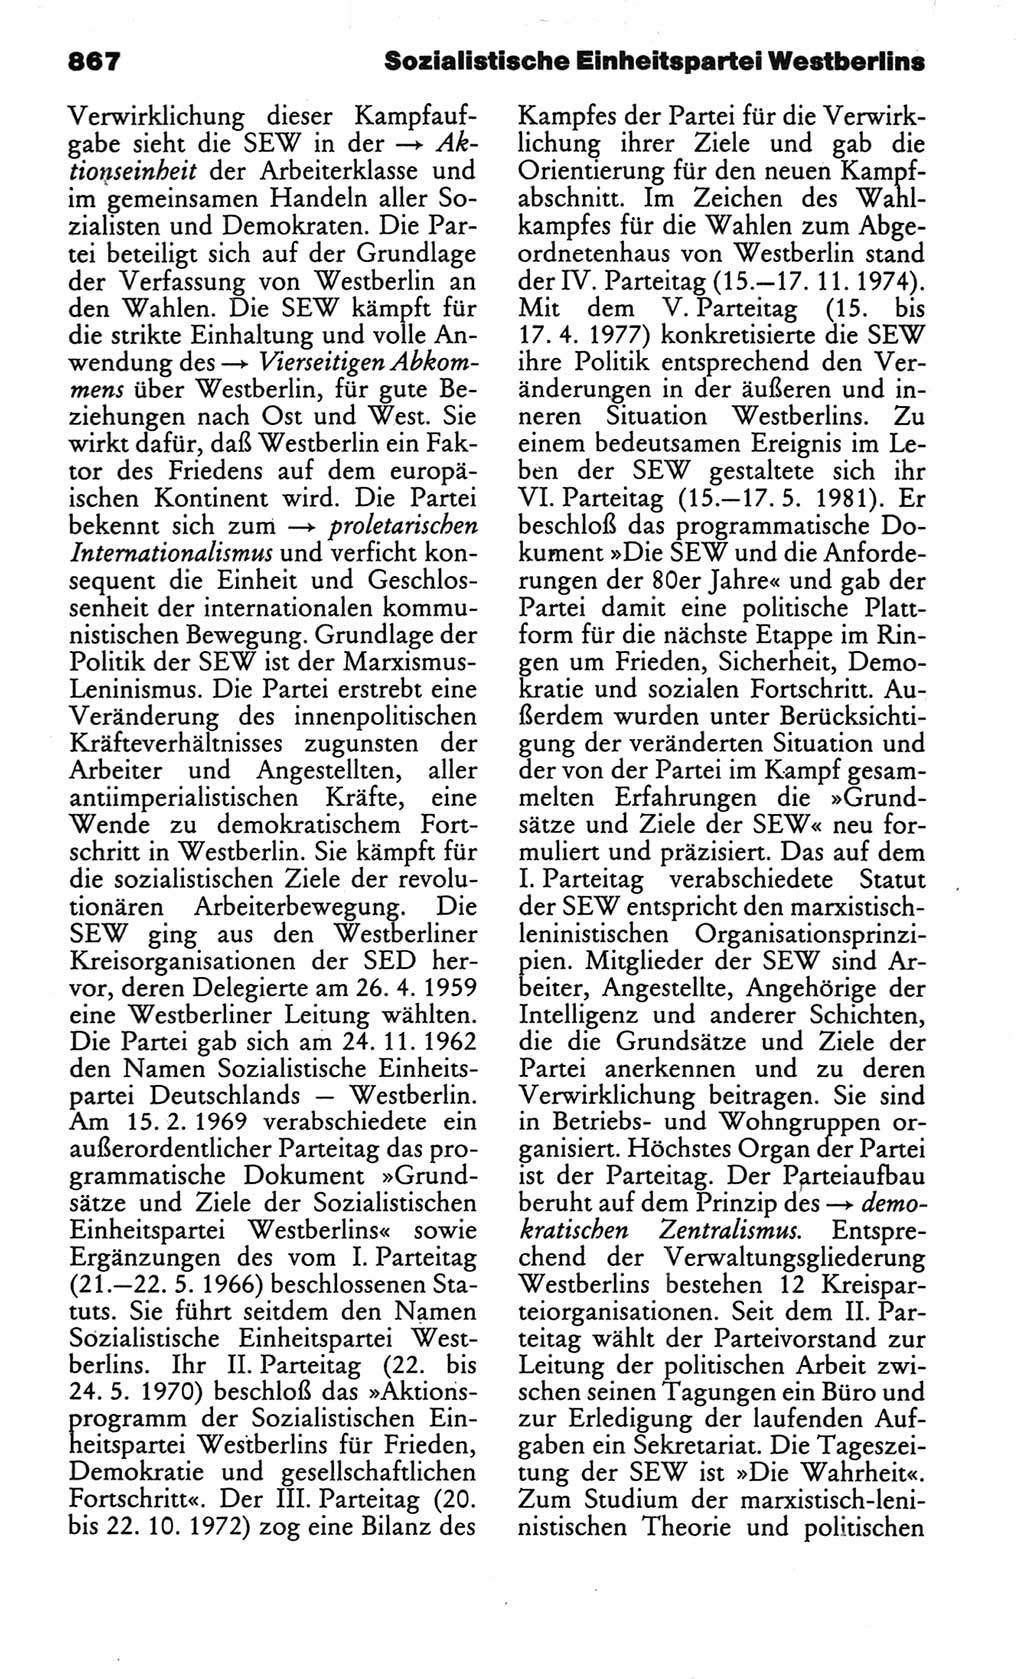 Kleines politisches Wörterbuch [Deutsche Demokratische Republik (DDR)] 1986, Seite 867 (Kl. pol. Wb. DDR 1986, S. 867)